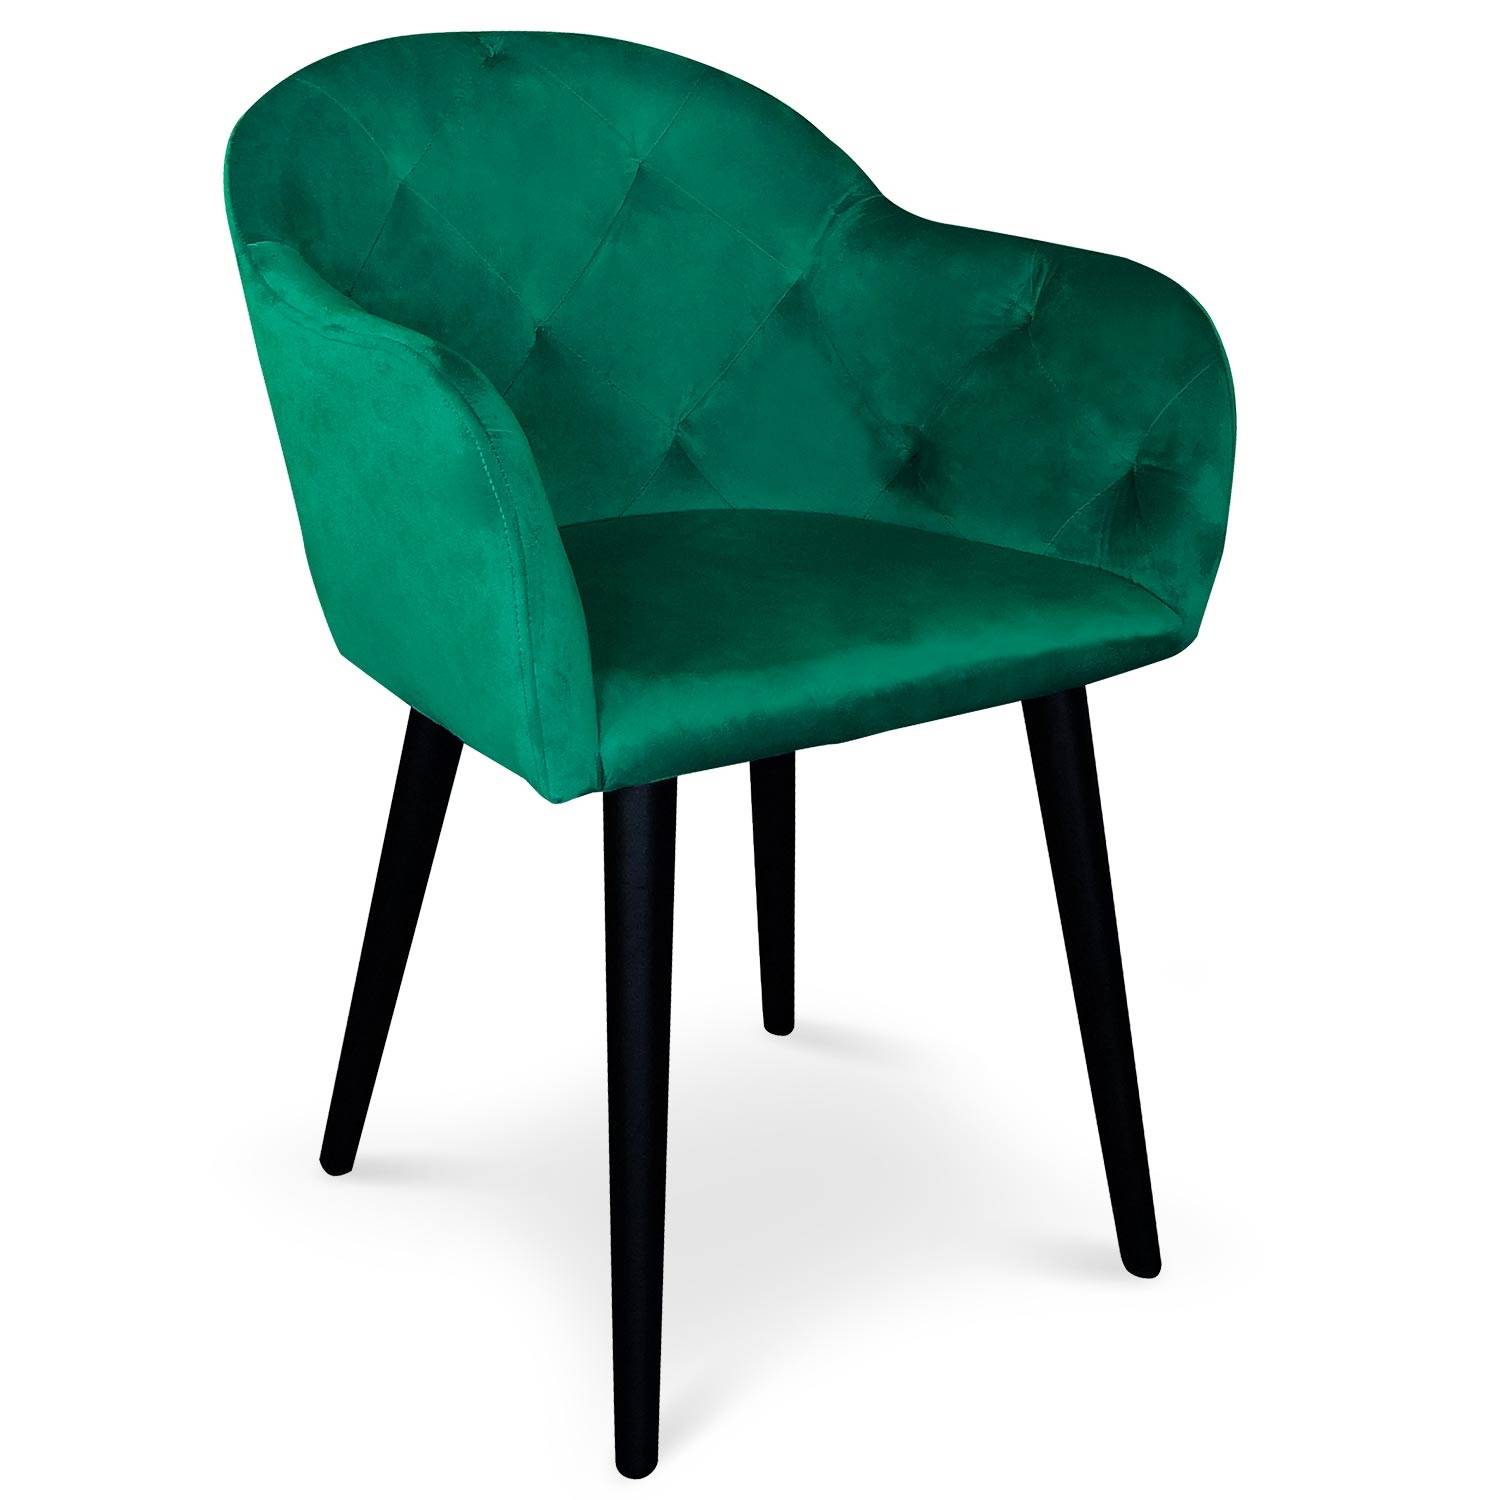 Honorine stoel / fauteuil groen fluweel